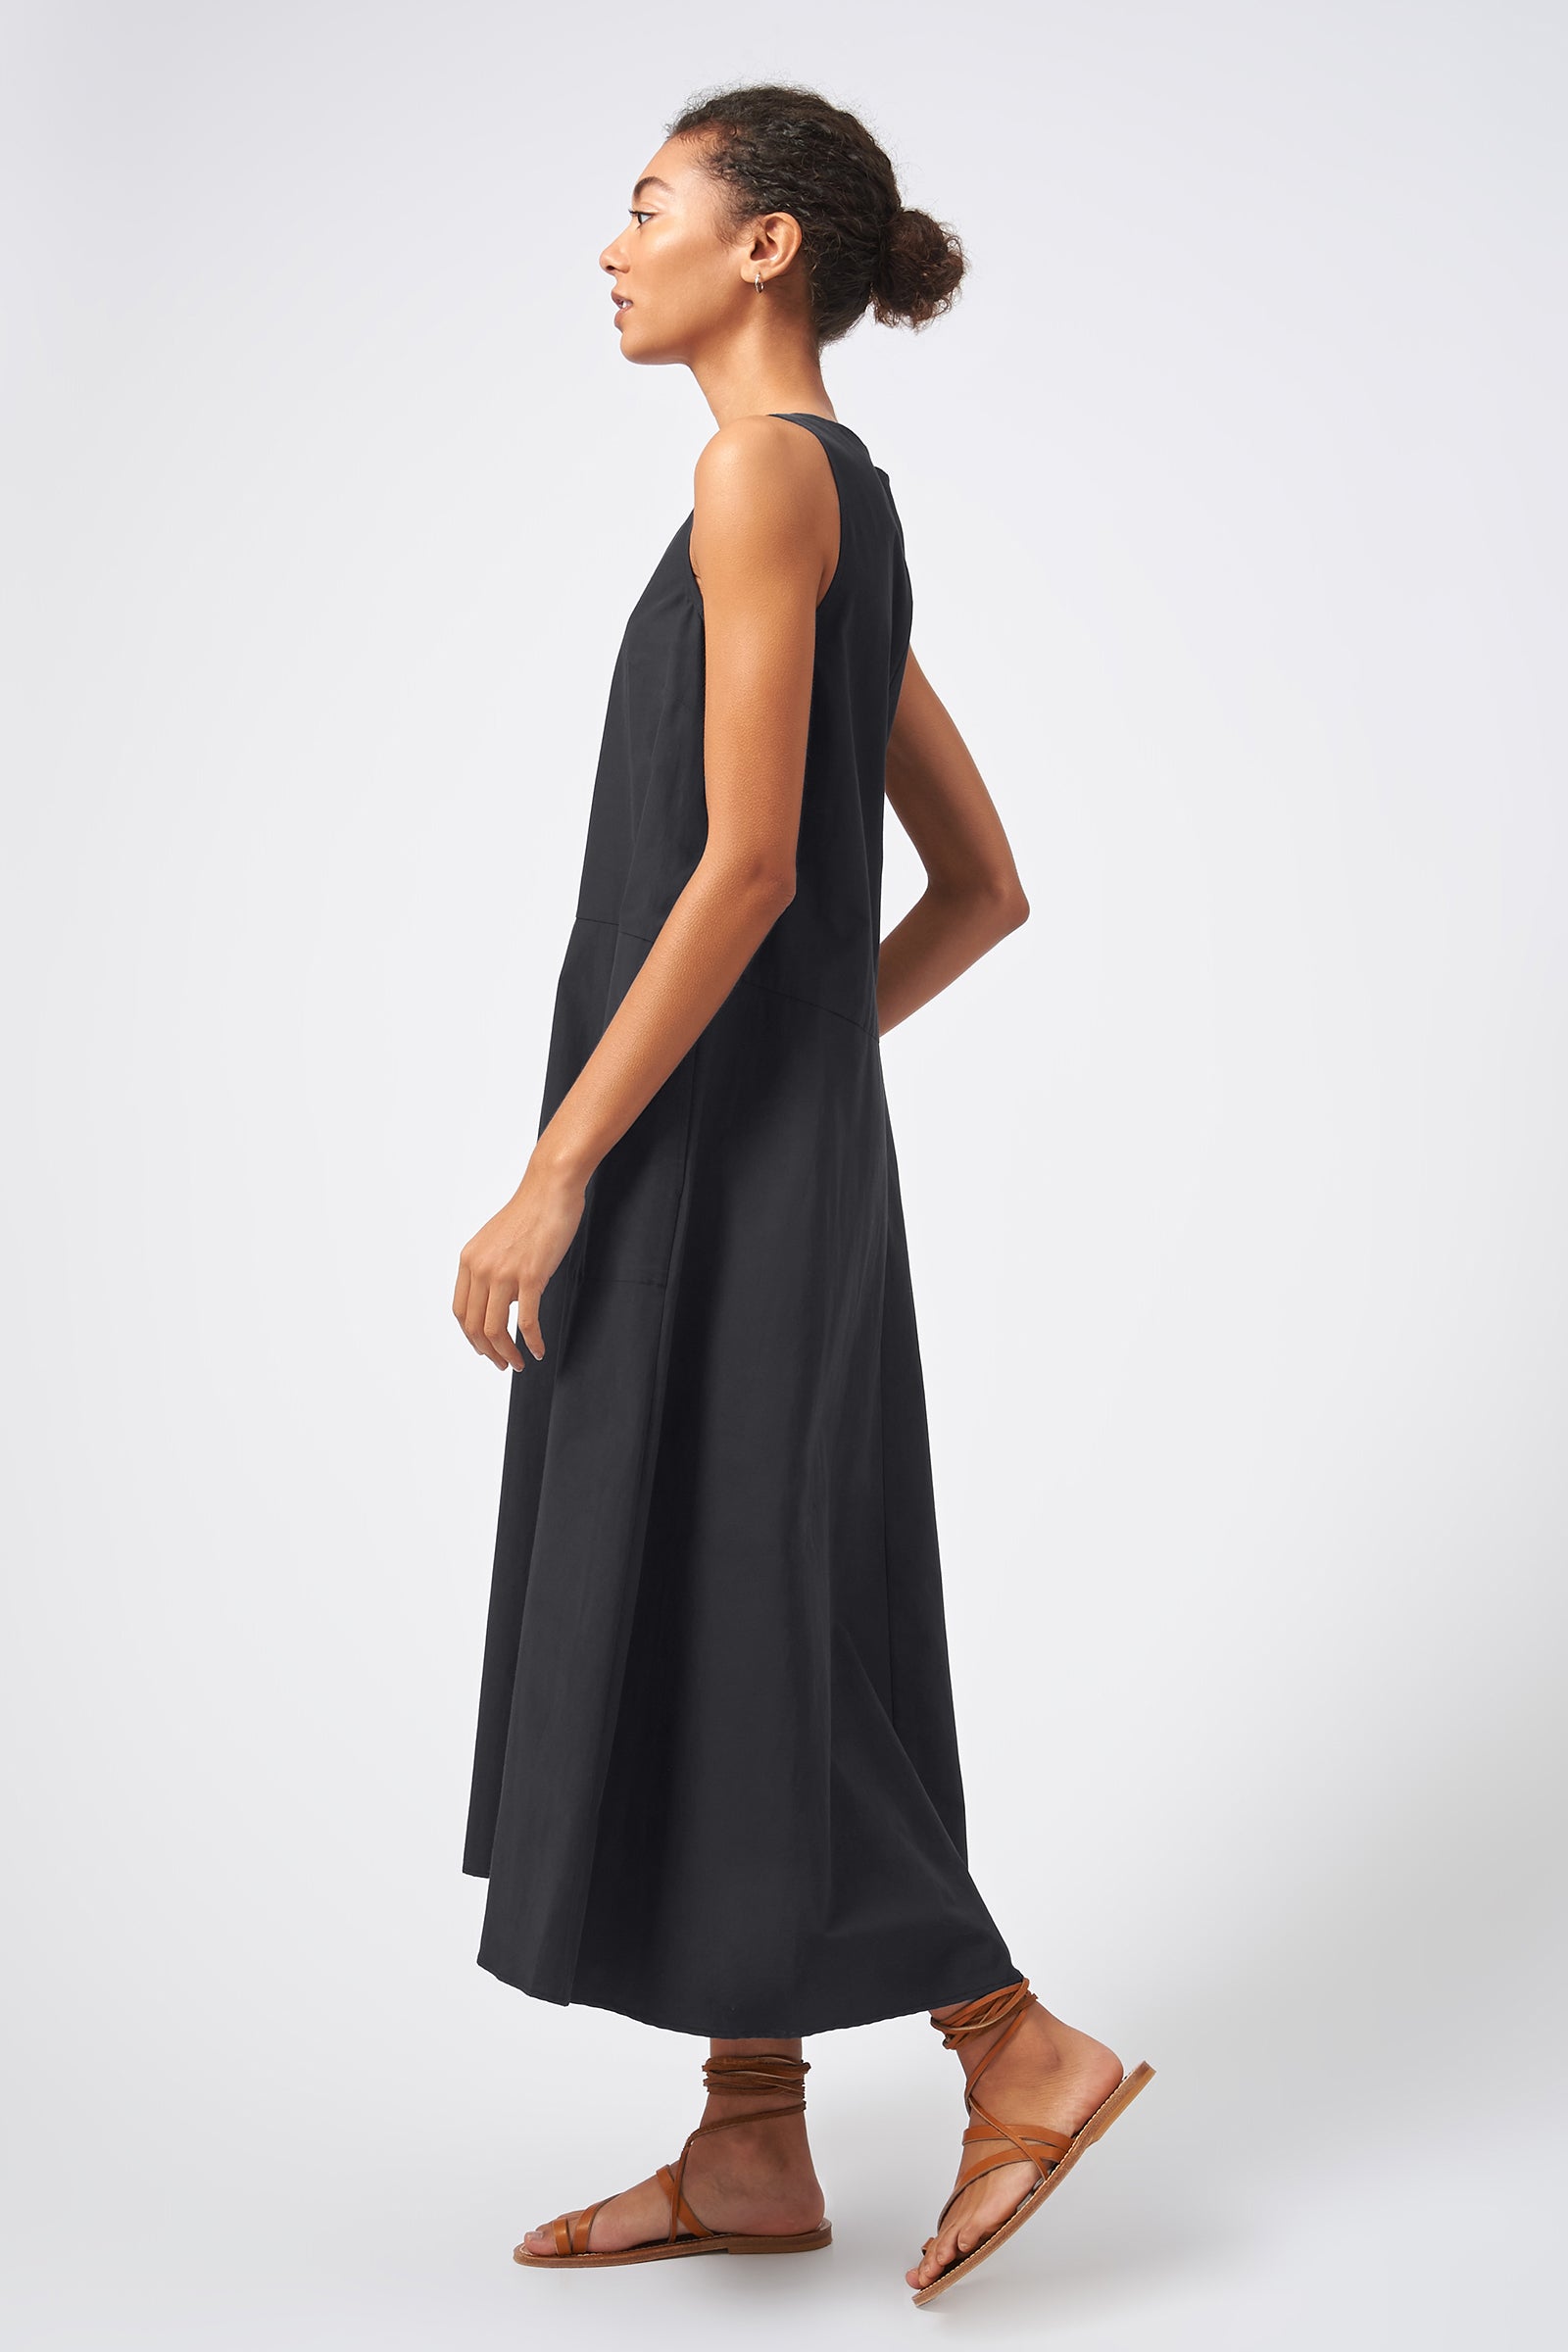  Kal Rieman V Neck Flounce Dress in Black on Model Full Side View